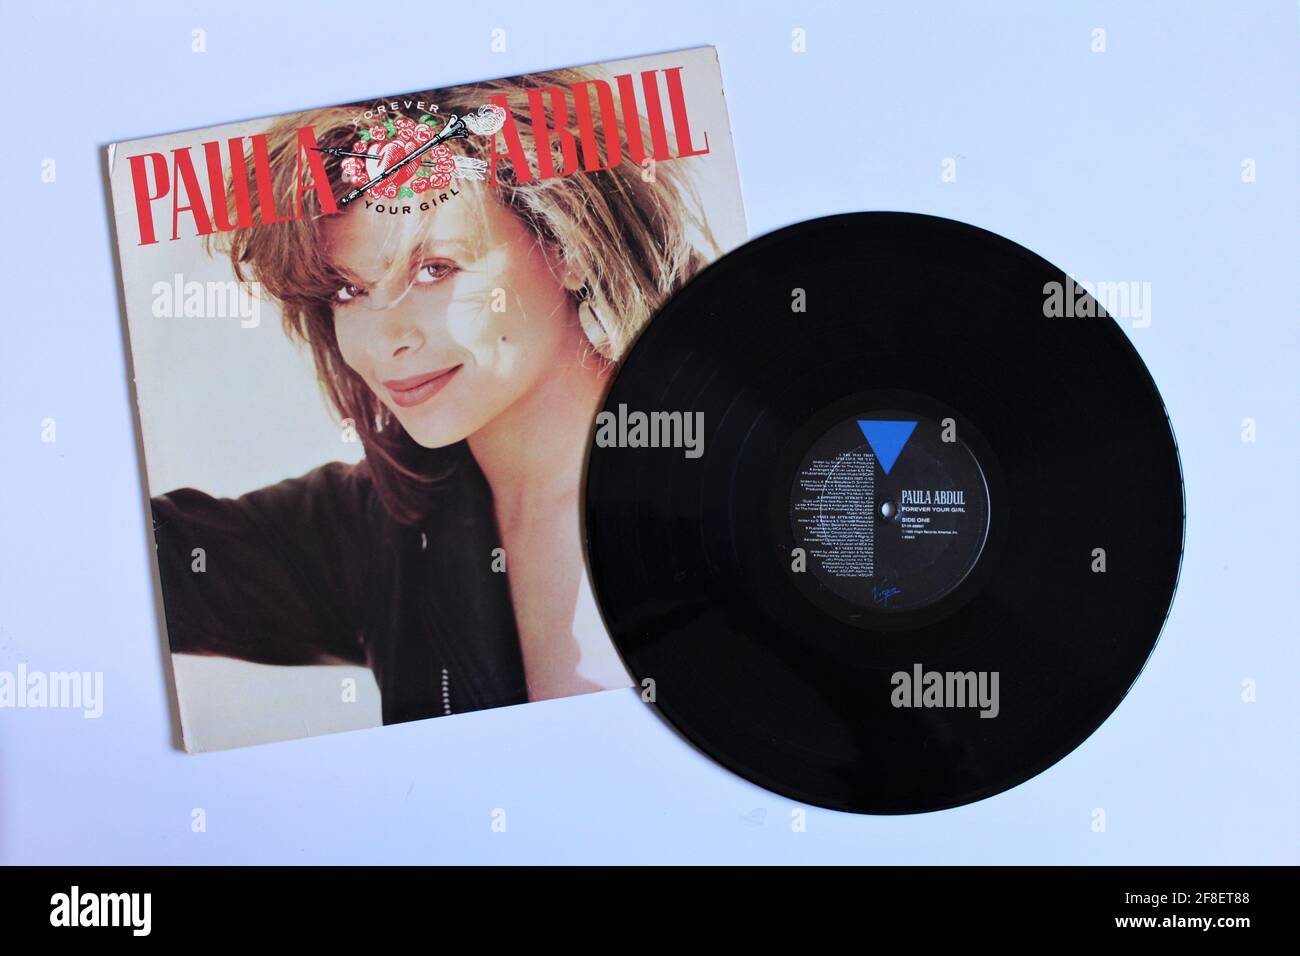 Dance Pop und RnB-Künstlerin, Paula Abdul Musikalbum auf Vinyl-Schallplatte. Titel: Forever Your Girl Stockfoto